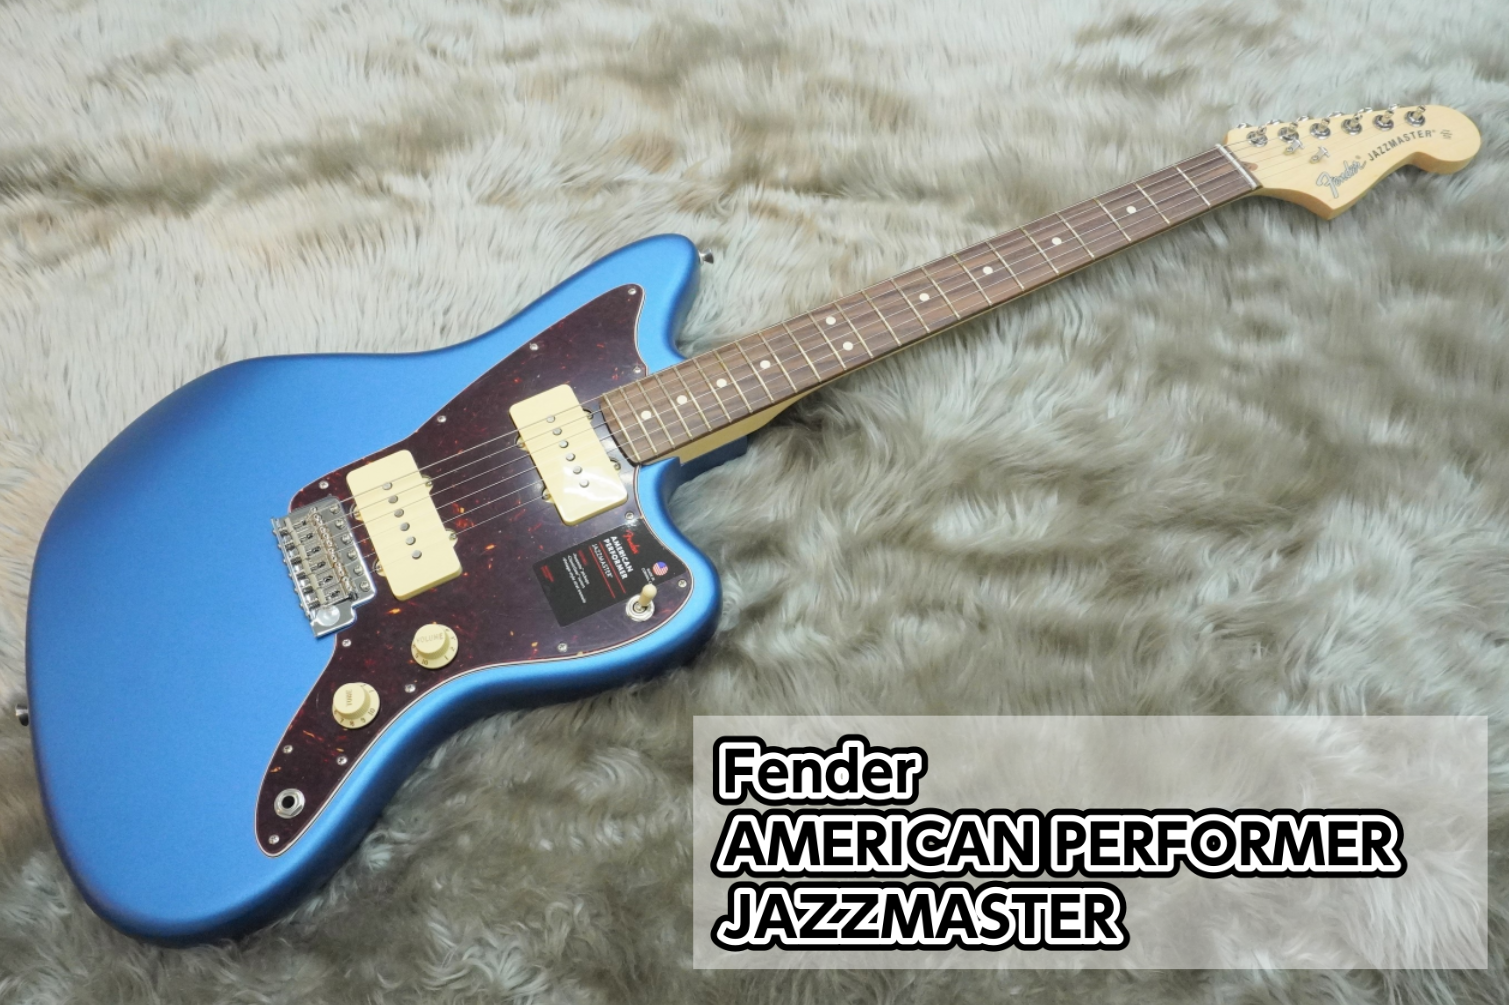 【エレキギター】Fender AMERICAN PERFORMER JAZZMASTER入荷のご案内